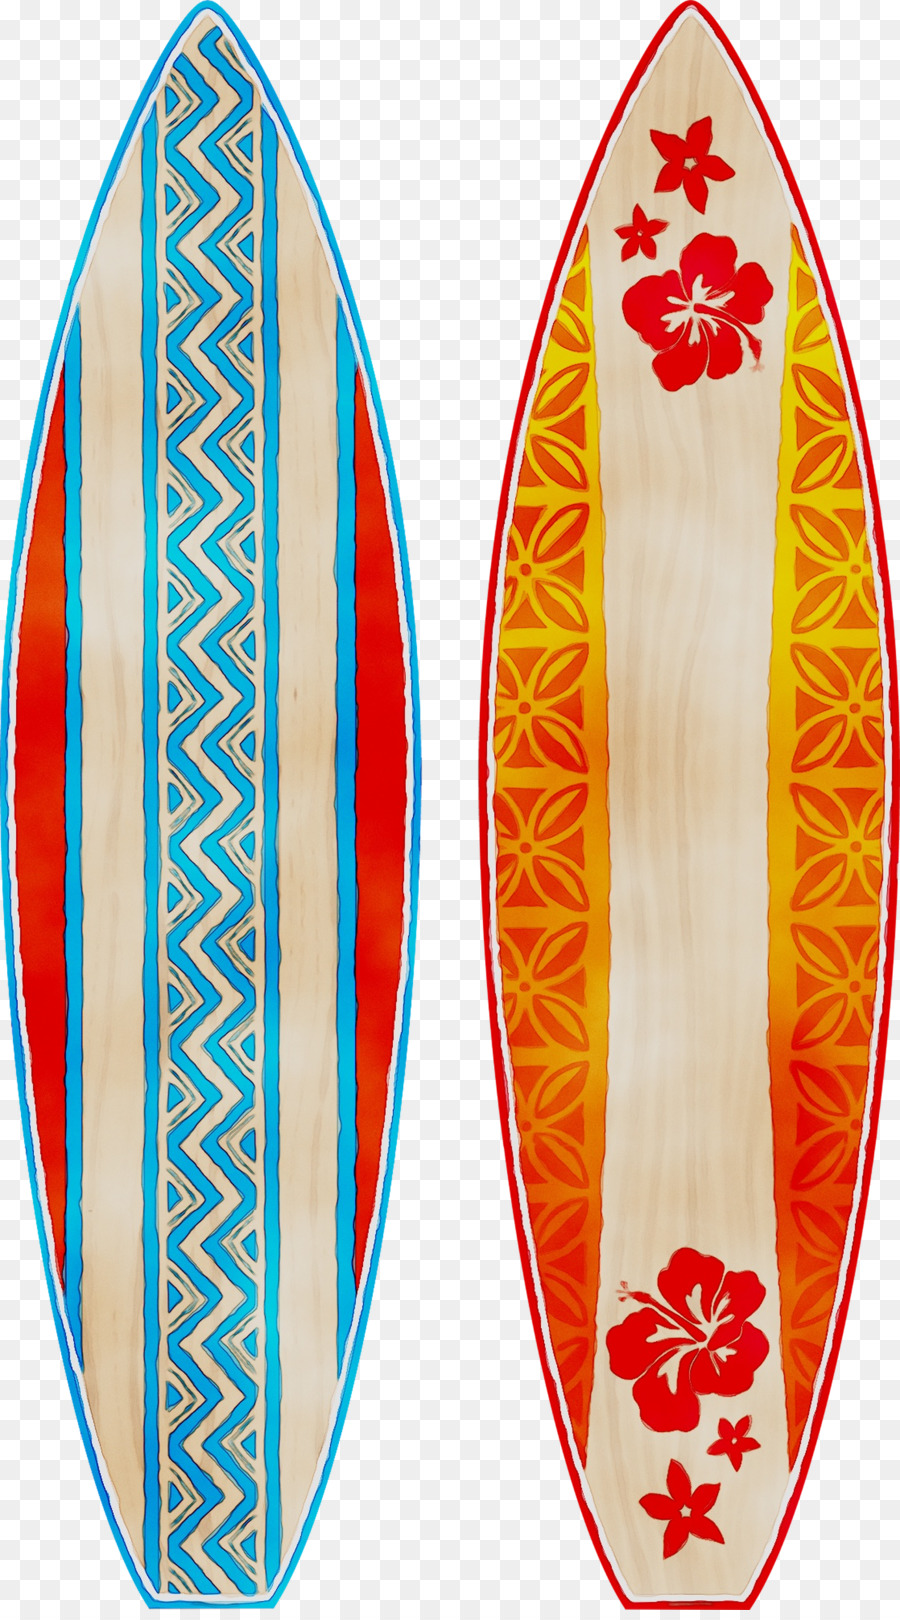 Surfboard Surfing Equipment